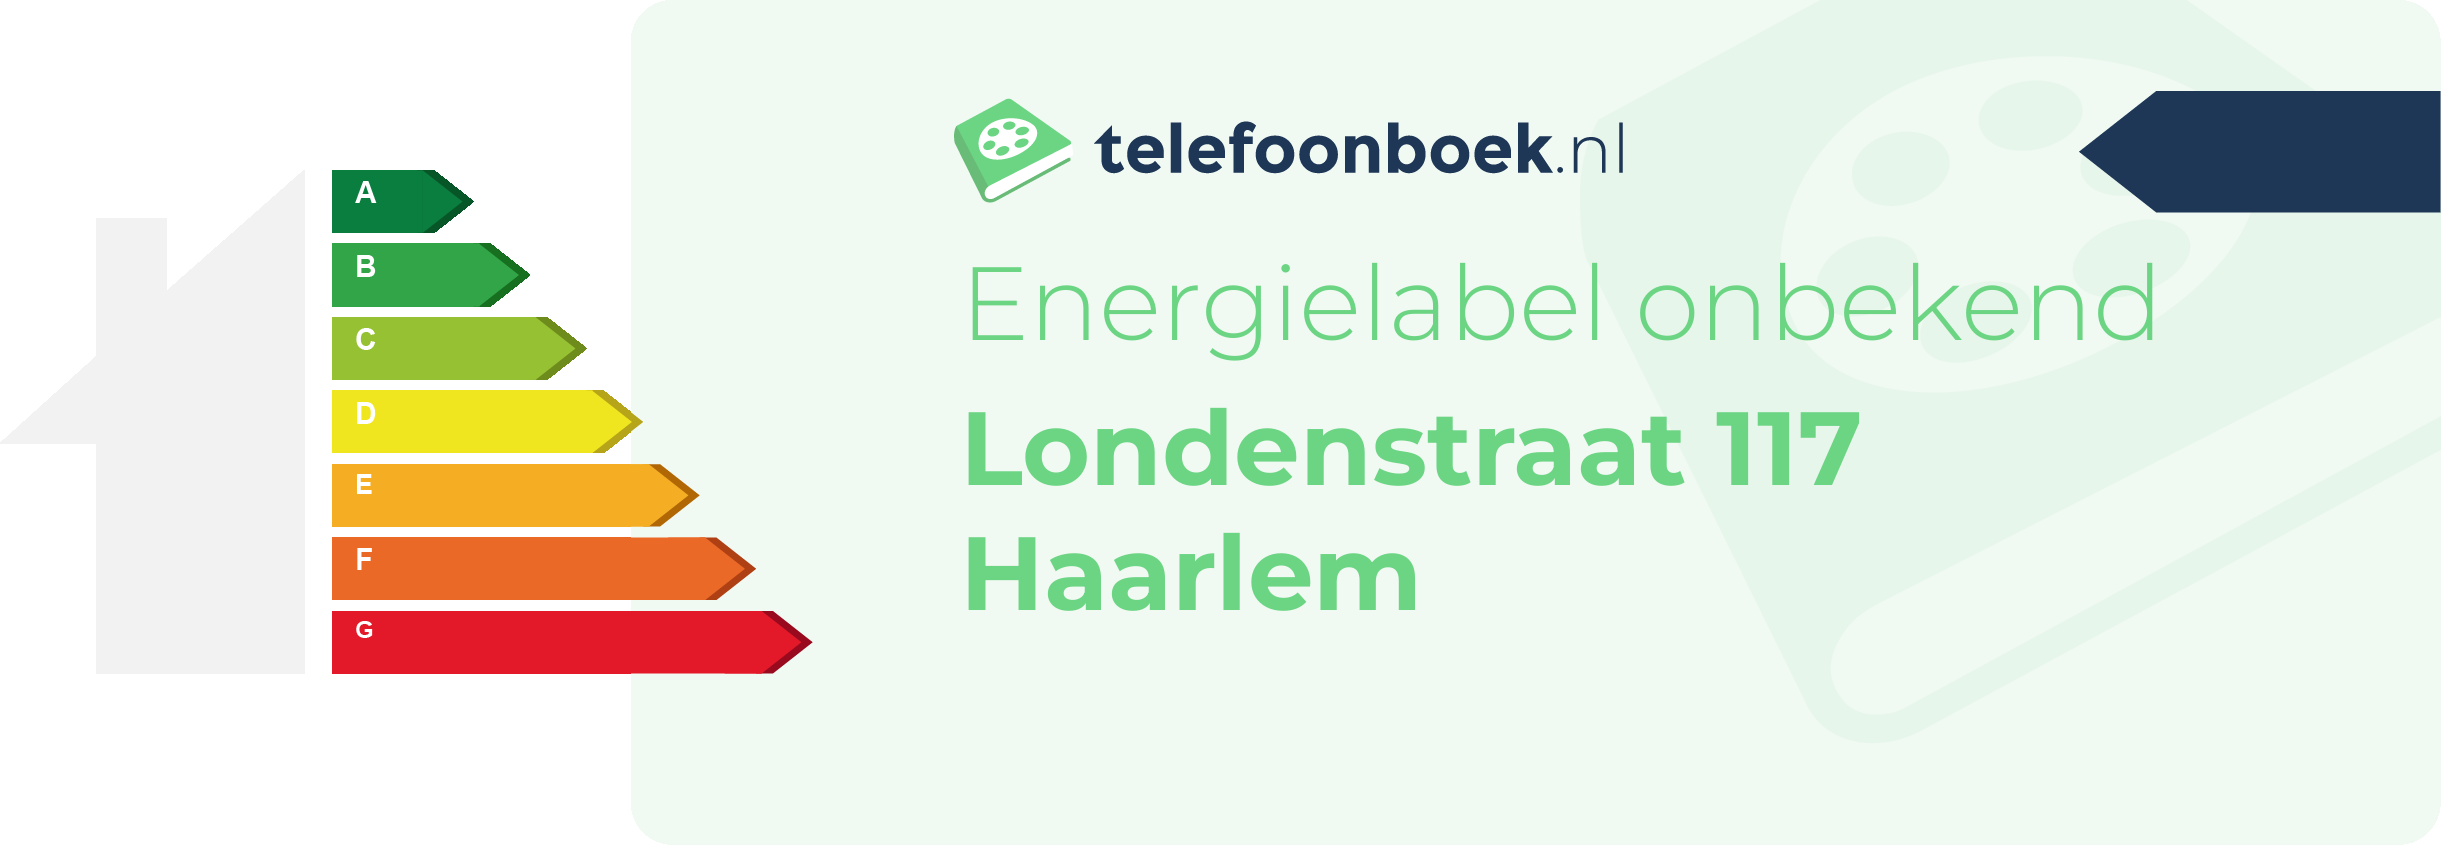 Energielabel Londenstraat 117 Haarlem